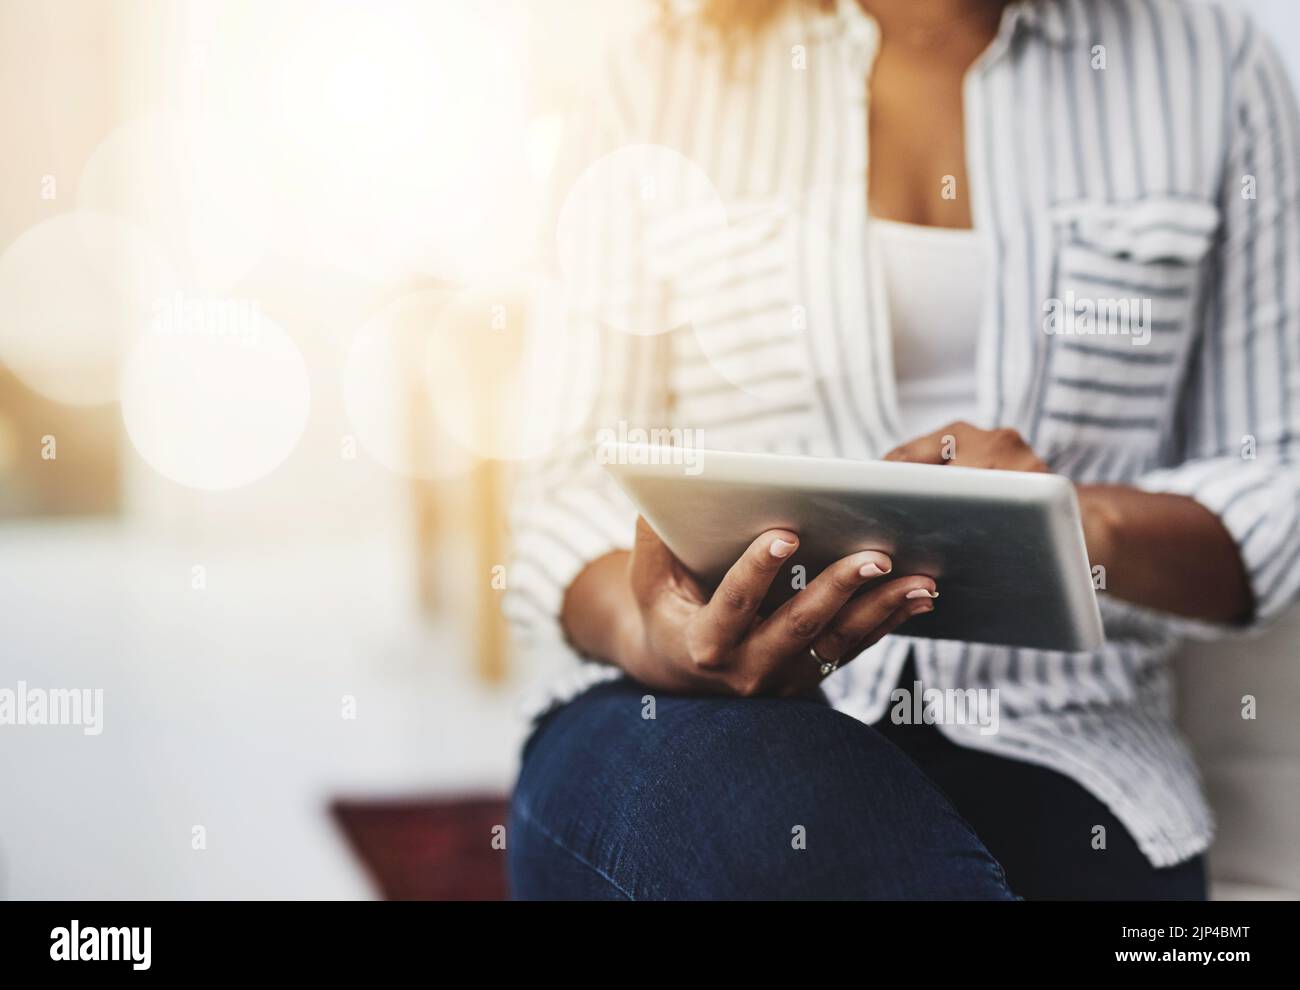 Tablet-Technologie in den Händen einer Frau, die in sozialen Medien surft, im Internet surft oder online chattet – mit Flare und Copyspace. Nahaufnahme eines Weibchens Stockfoto